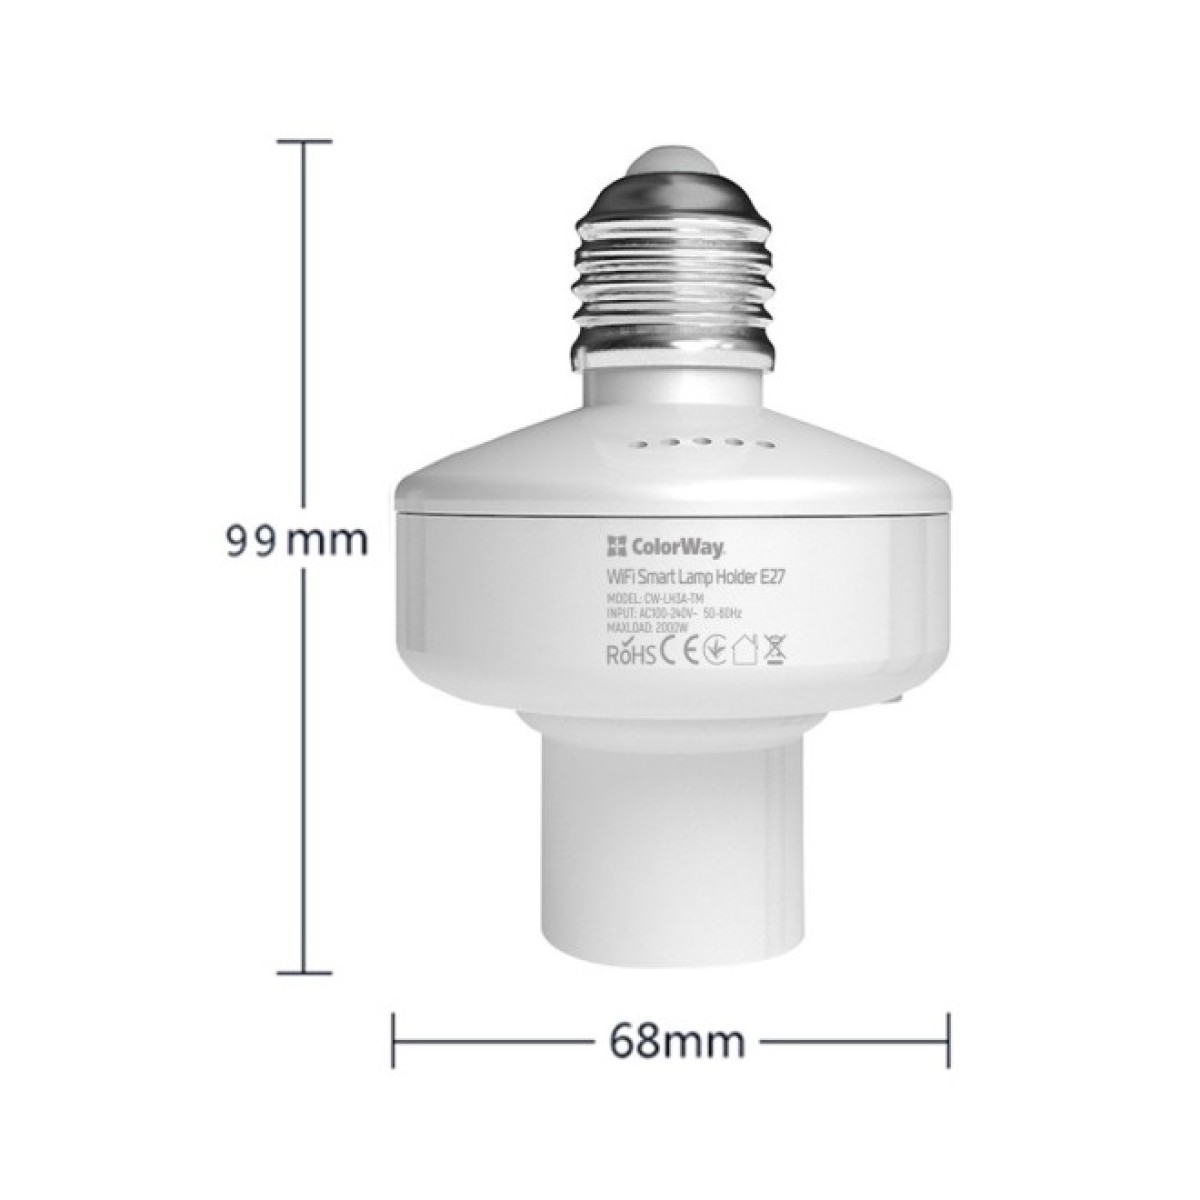 Розумна лампочка ColorWay Wi-Fi Smart Lamp Holder E27 (CW-LH3A-TM) 98_98.jpg - фото 9